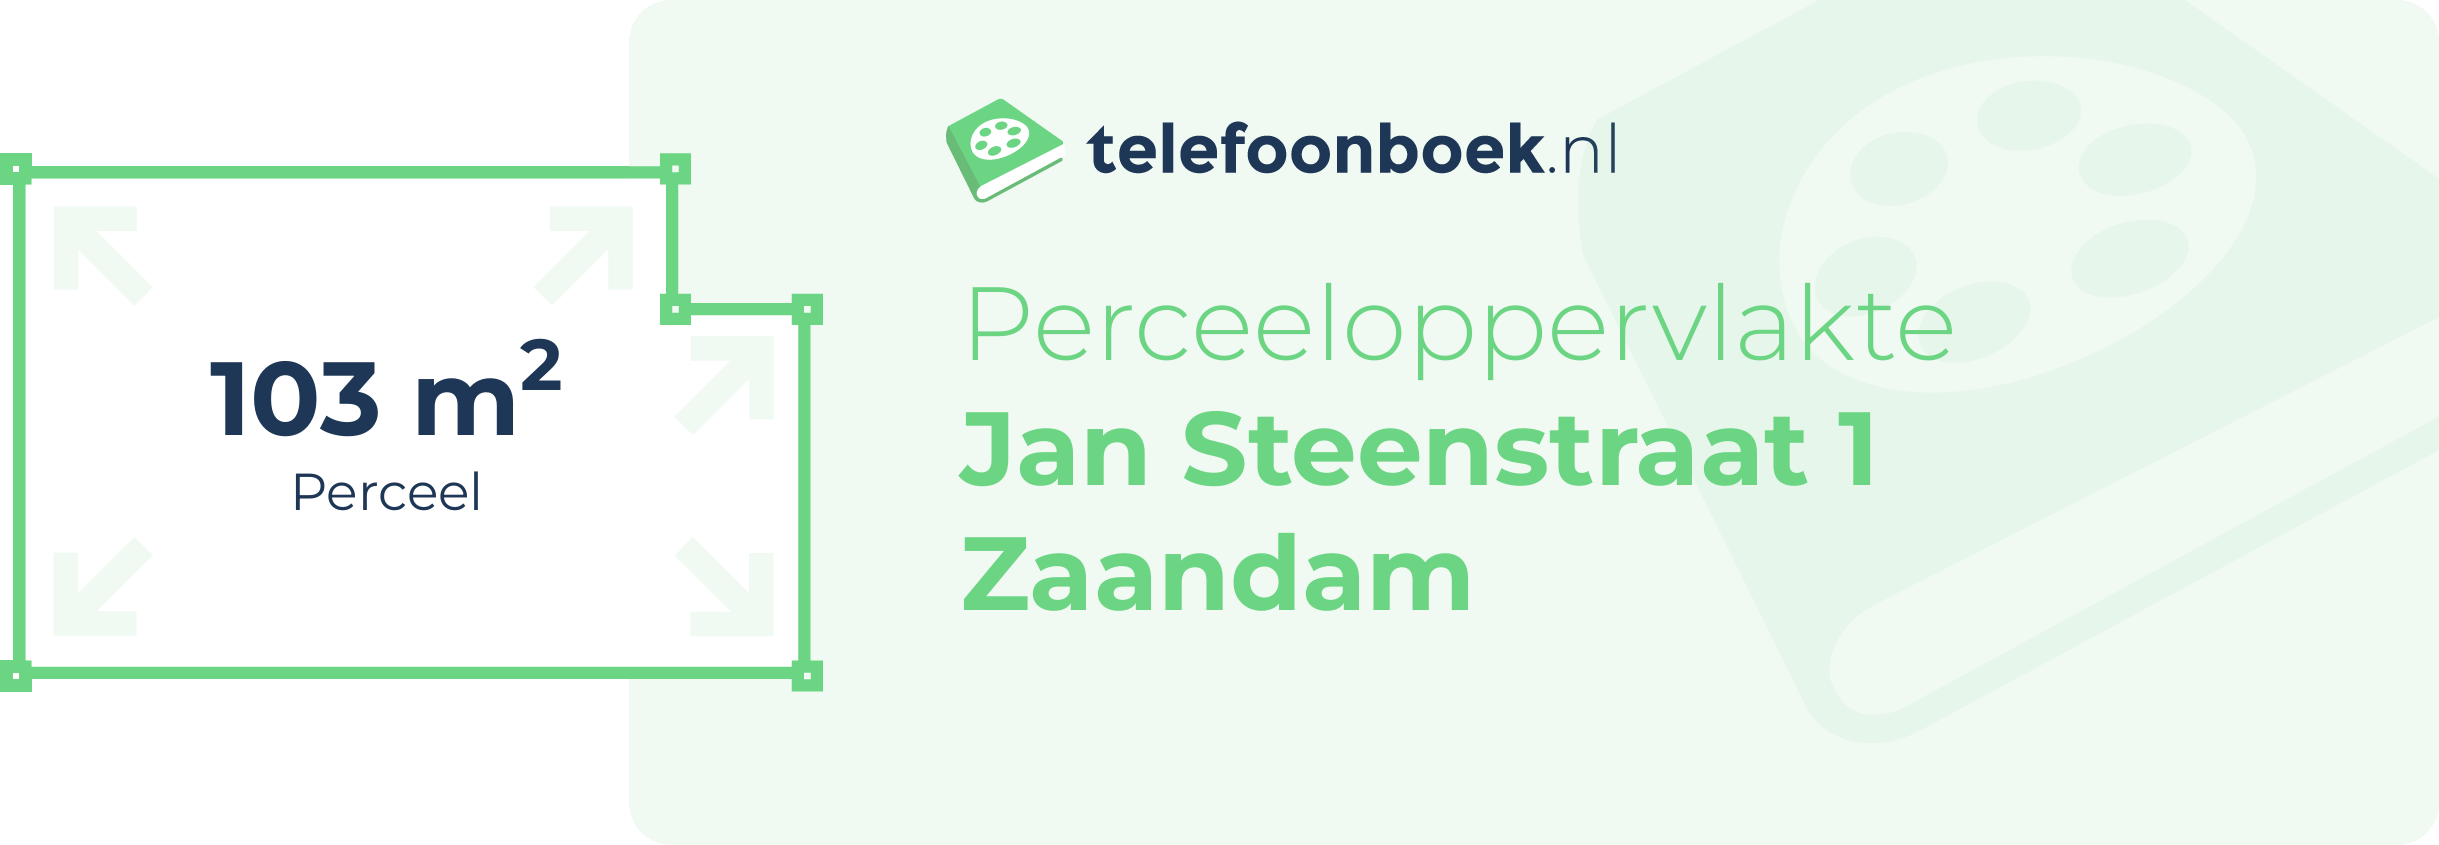 Perceeloppervlakte Jan Steenstraat 1 Zaandam